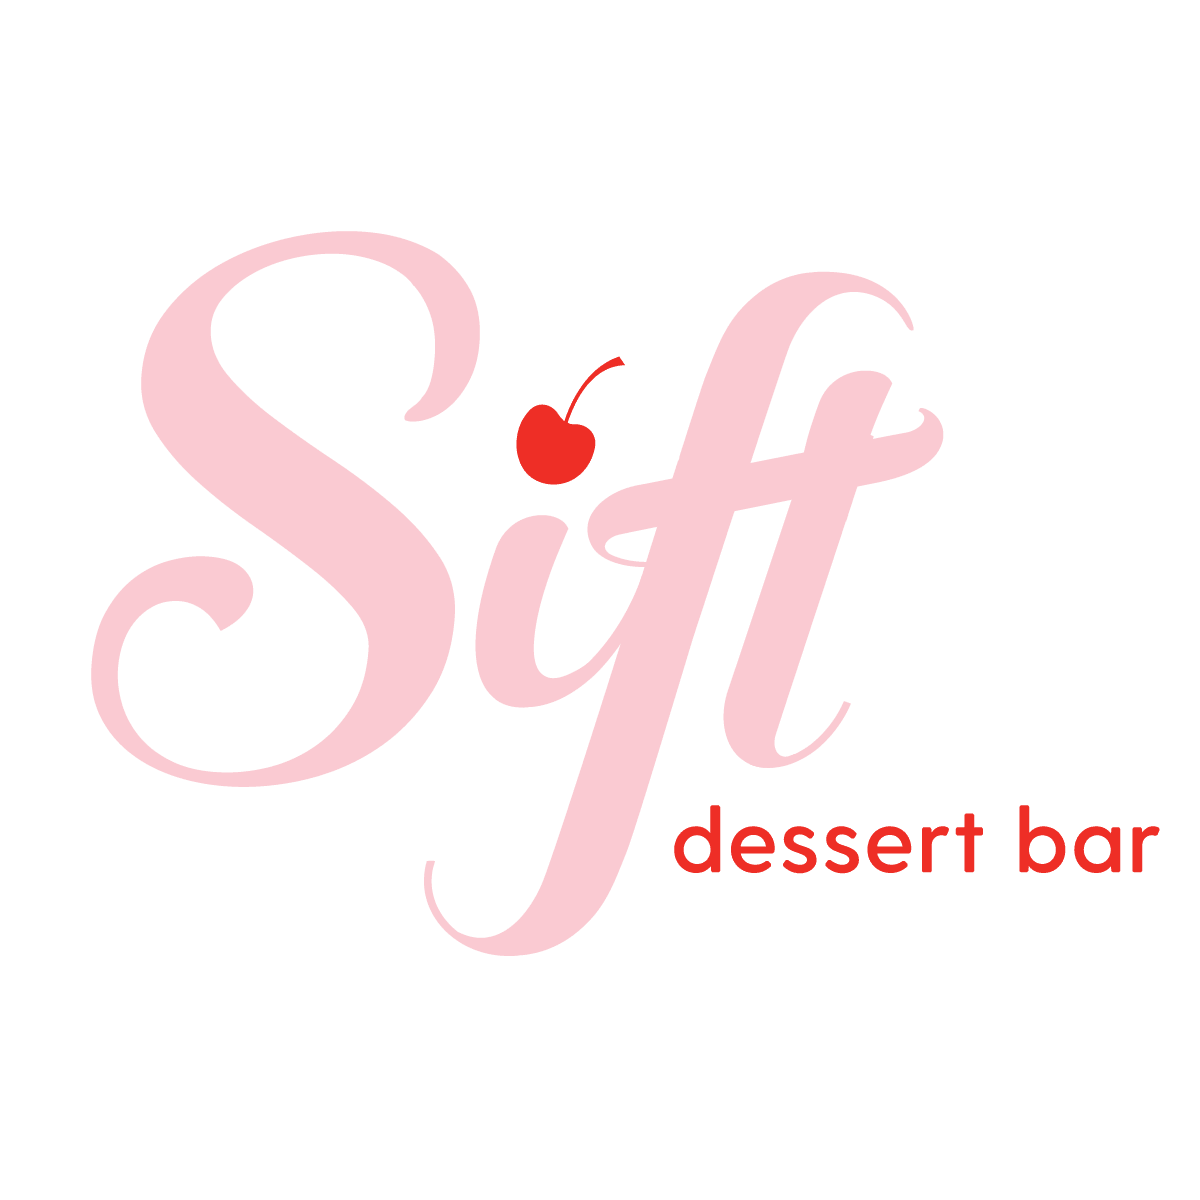 The Cherry on Top - A NEW Sift Dessert Bar - Sift Dessert Bar